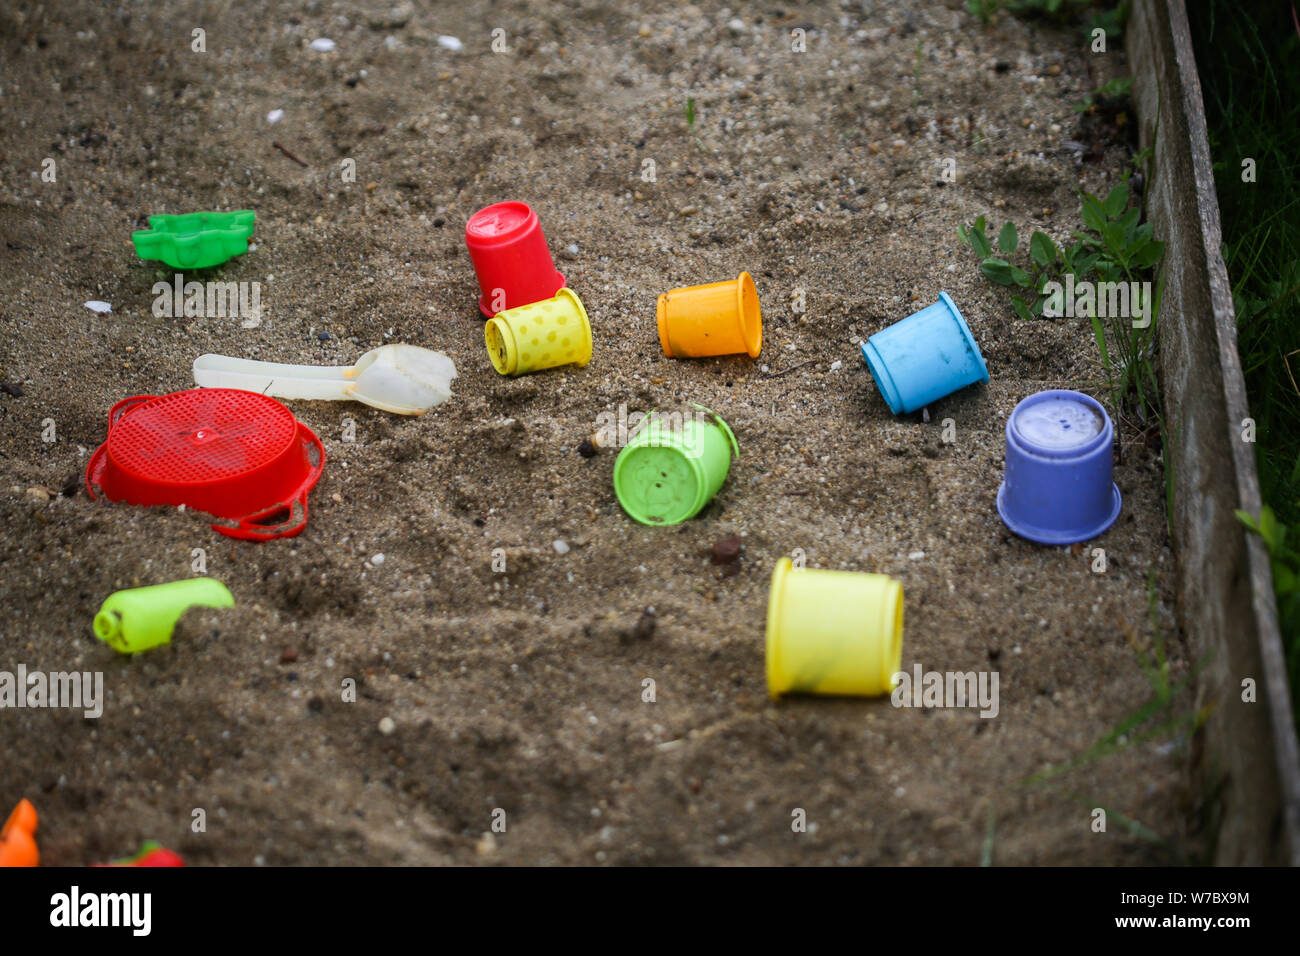 Plastikspielzeug in feuchten Sand Grube während eines regnerischen Tag Stockfoto